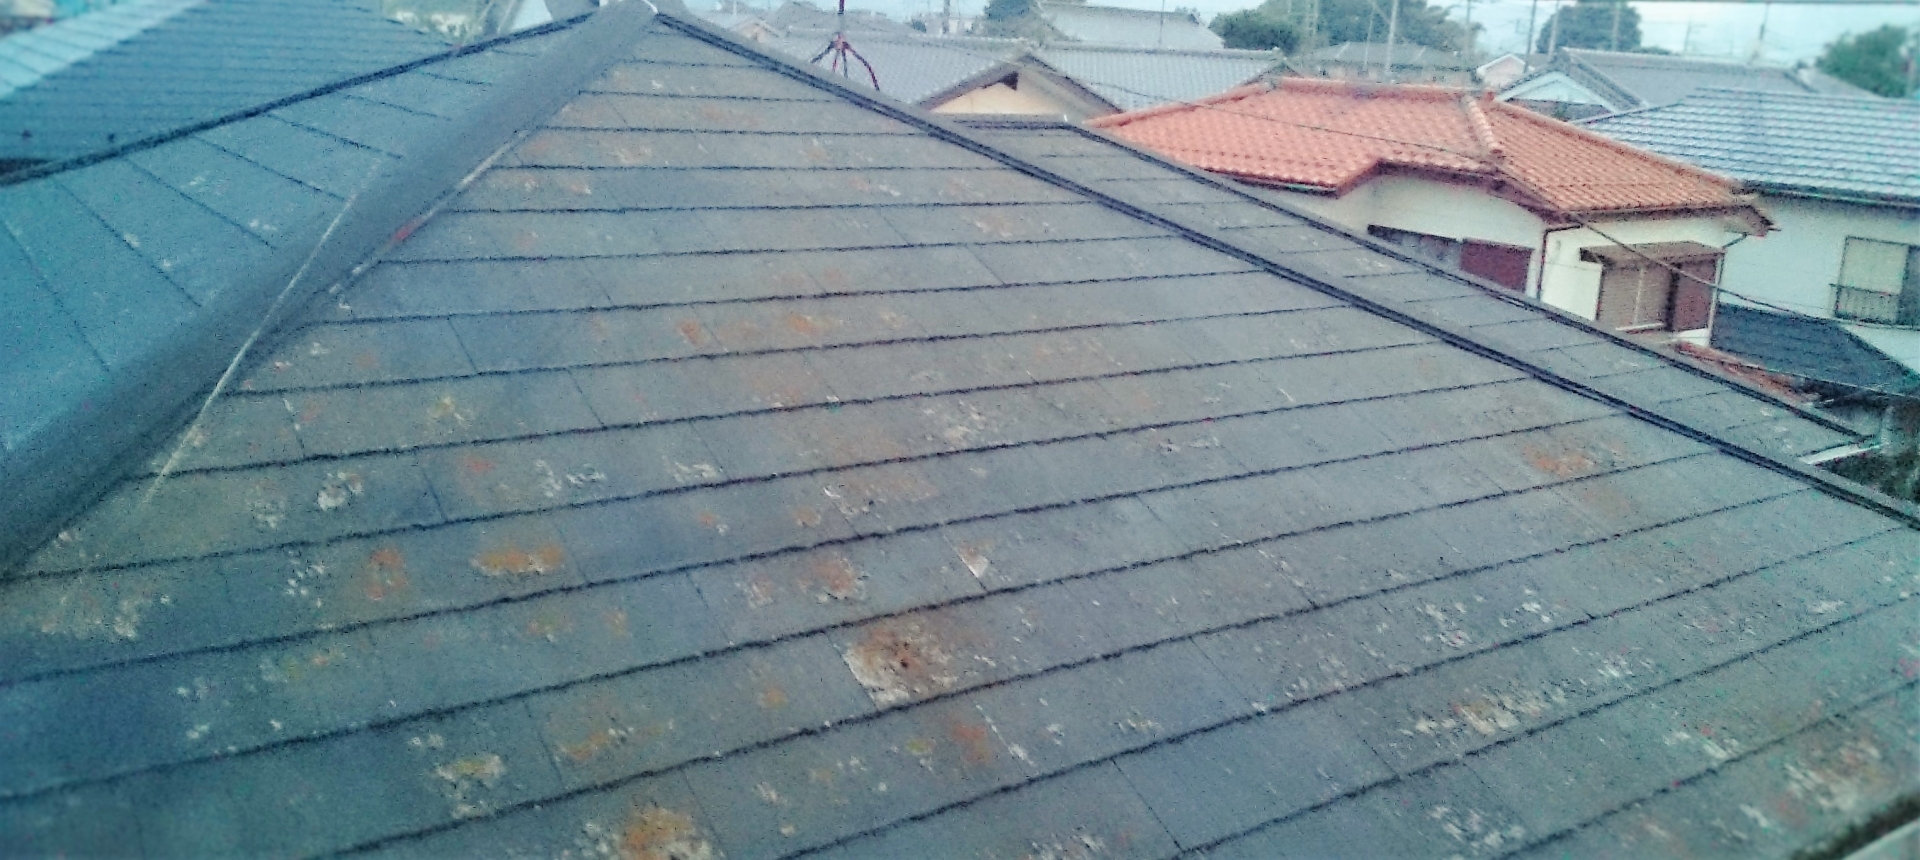 塗装が必要なスレート屋根